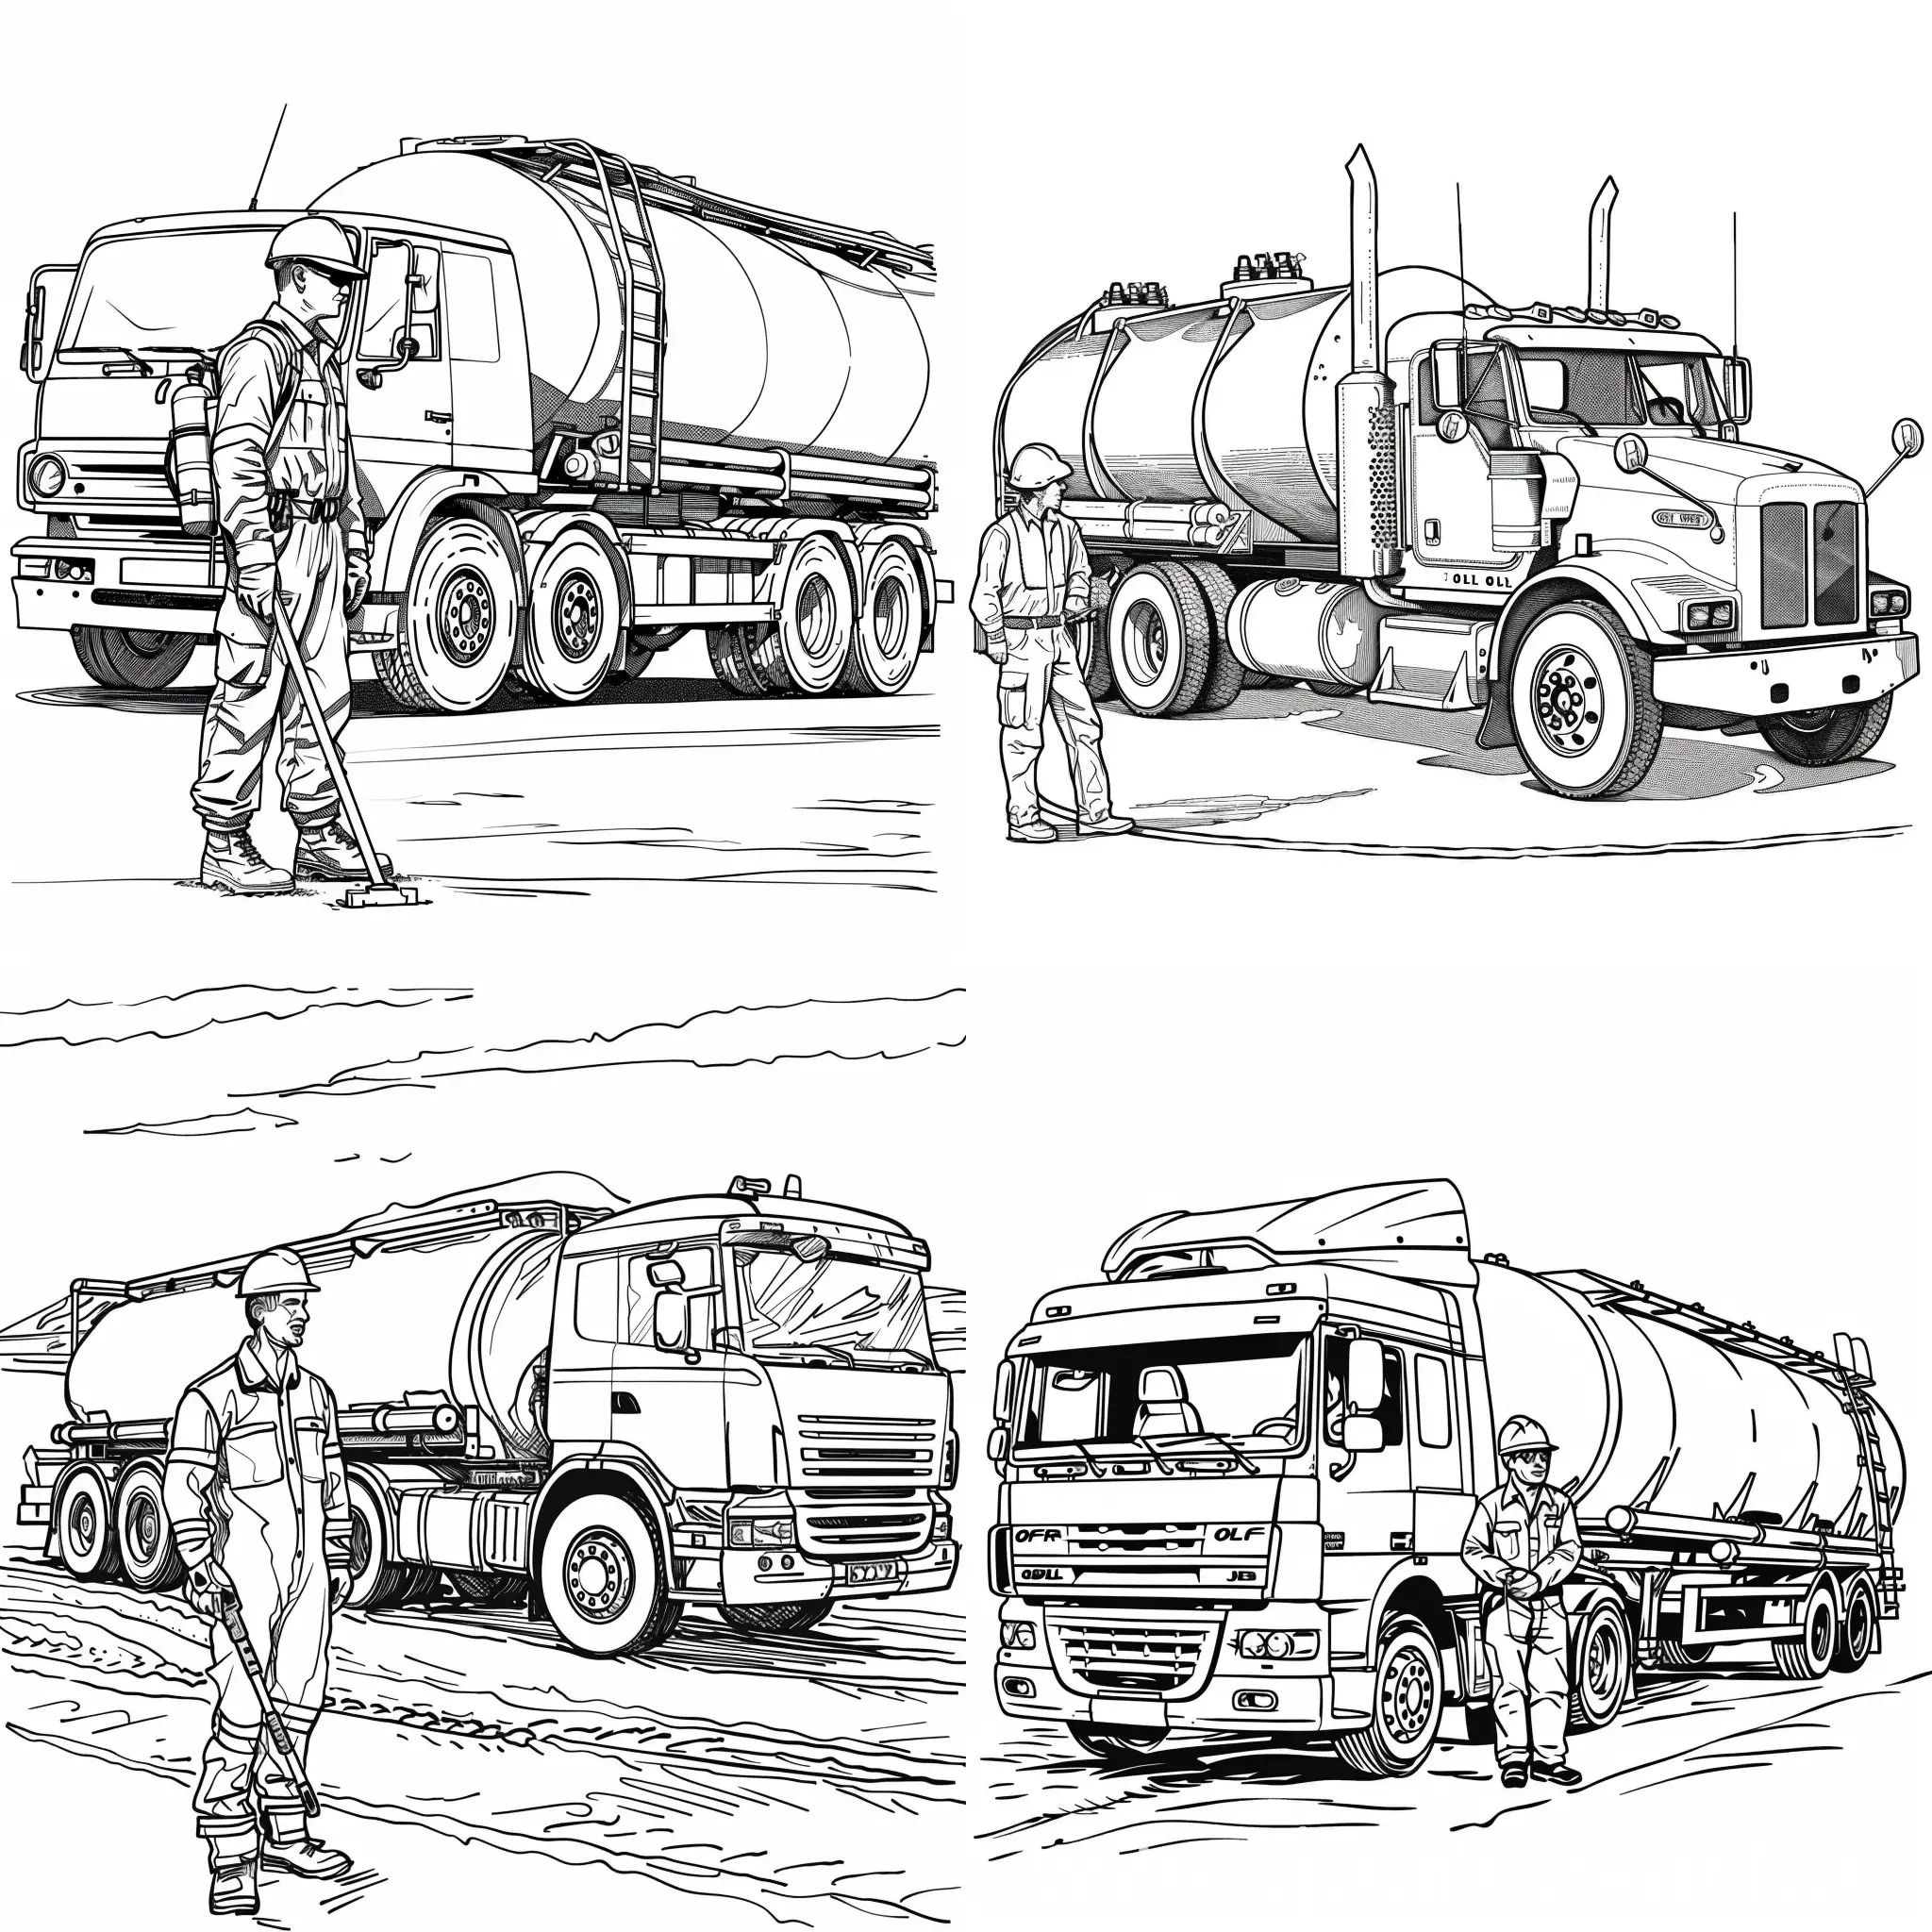 Joyful-Children-Coloring-an-Oil-Industry-Worker-on-a-Tanker-Truck